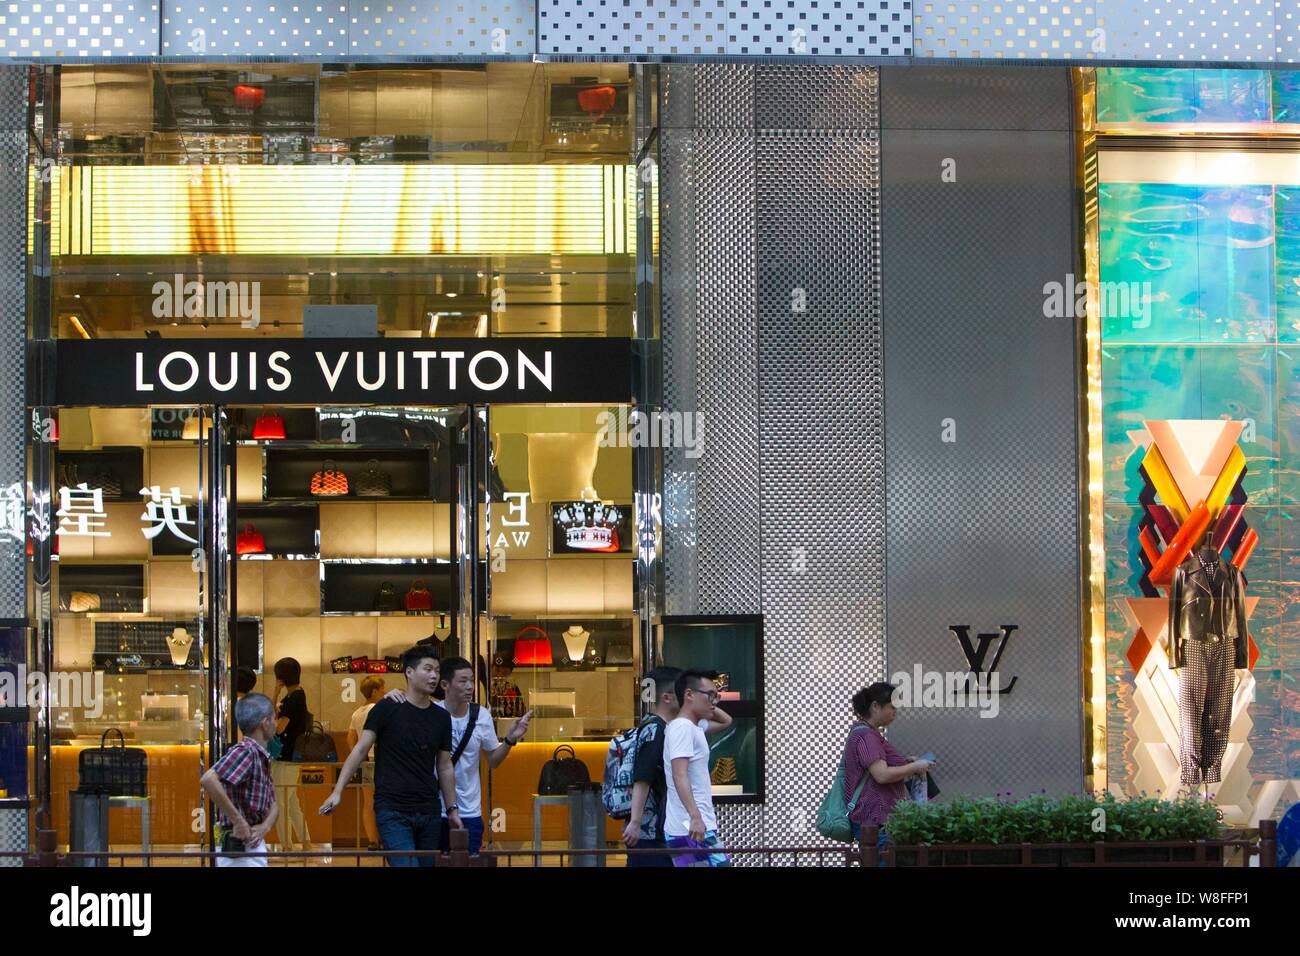 Flying start for LVMH Moet Hennessy Louis Vuitton - Inside Retail Asia